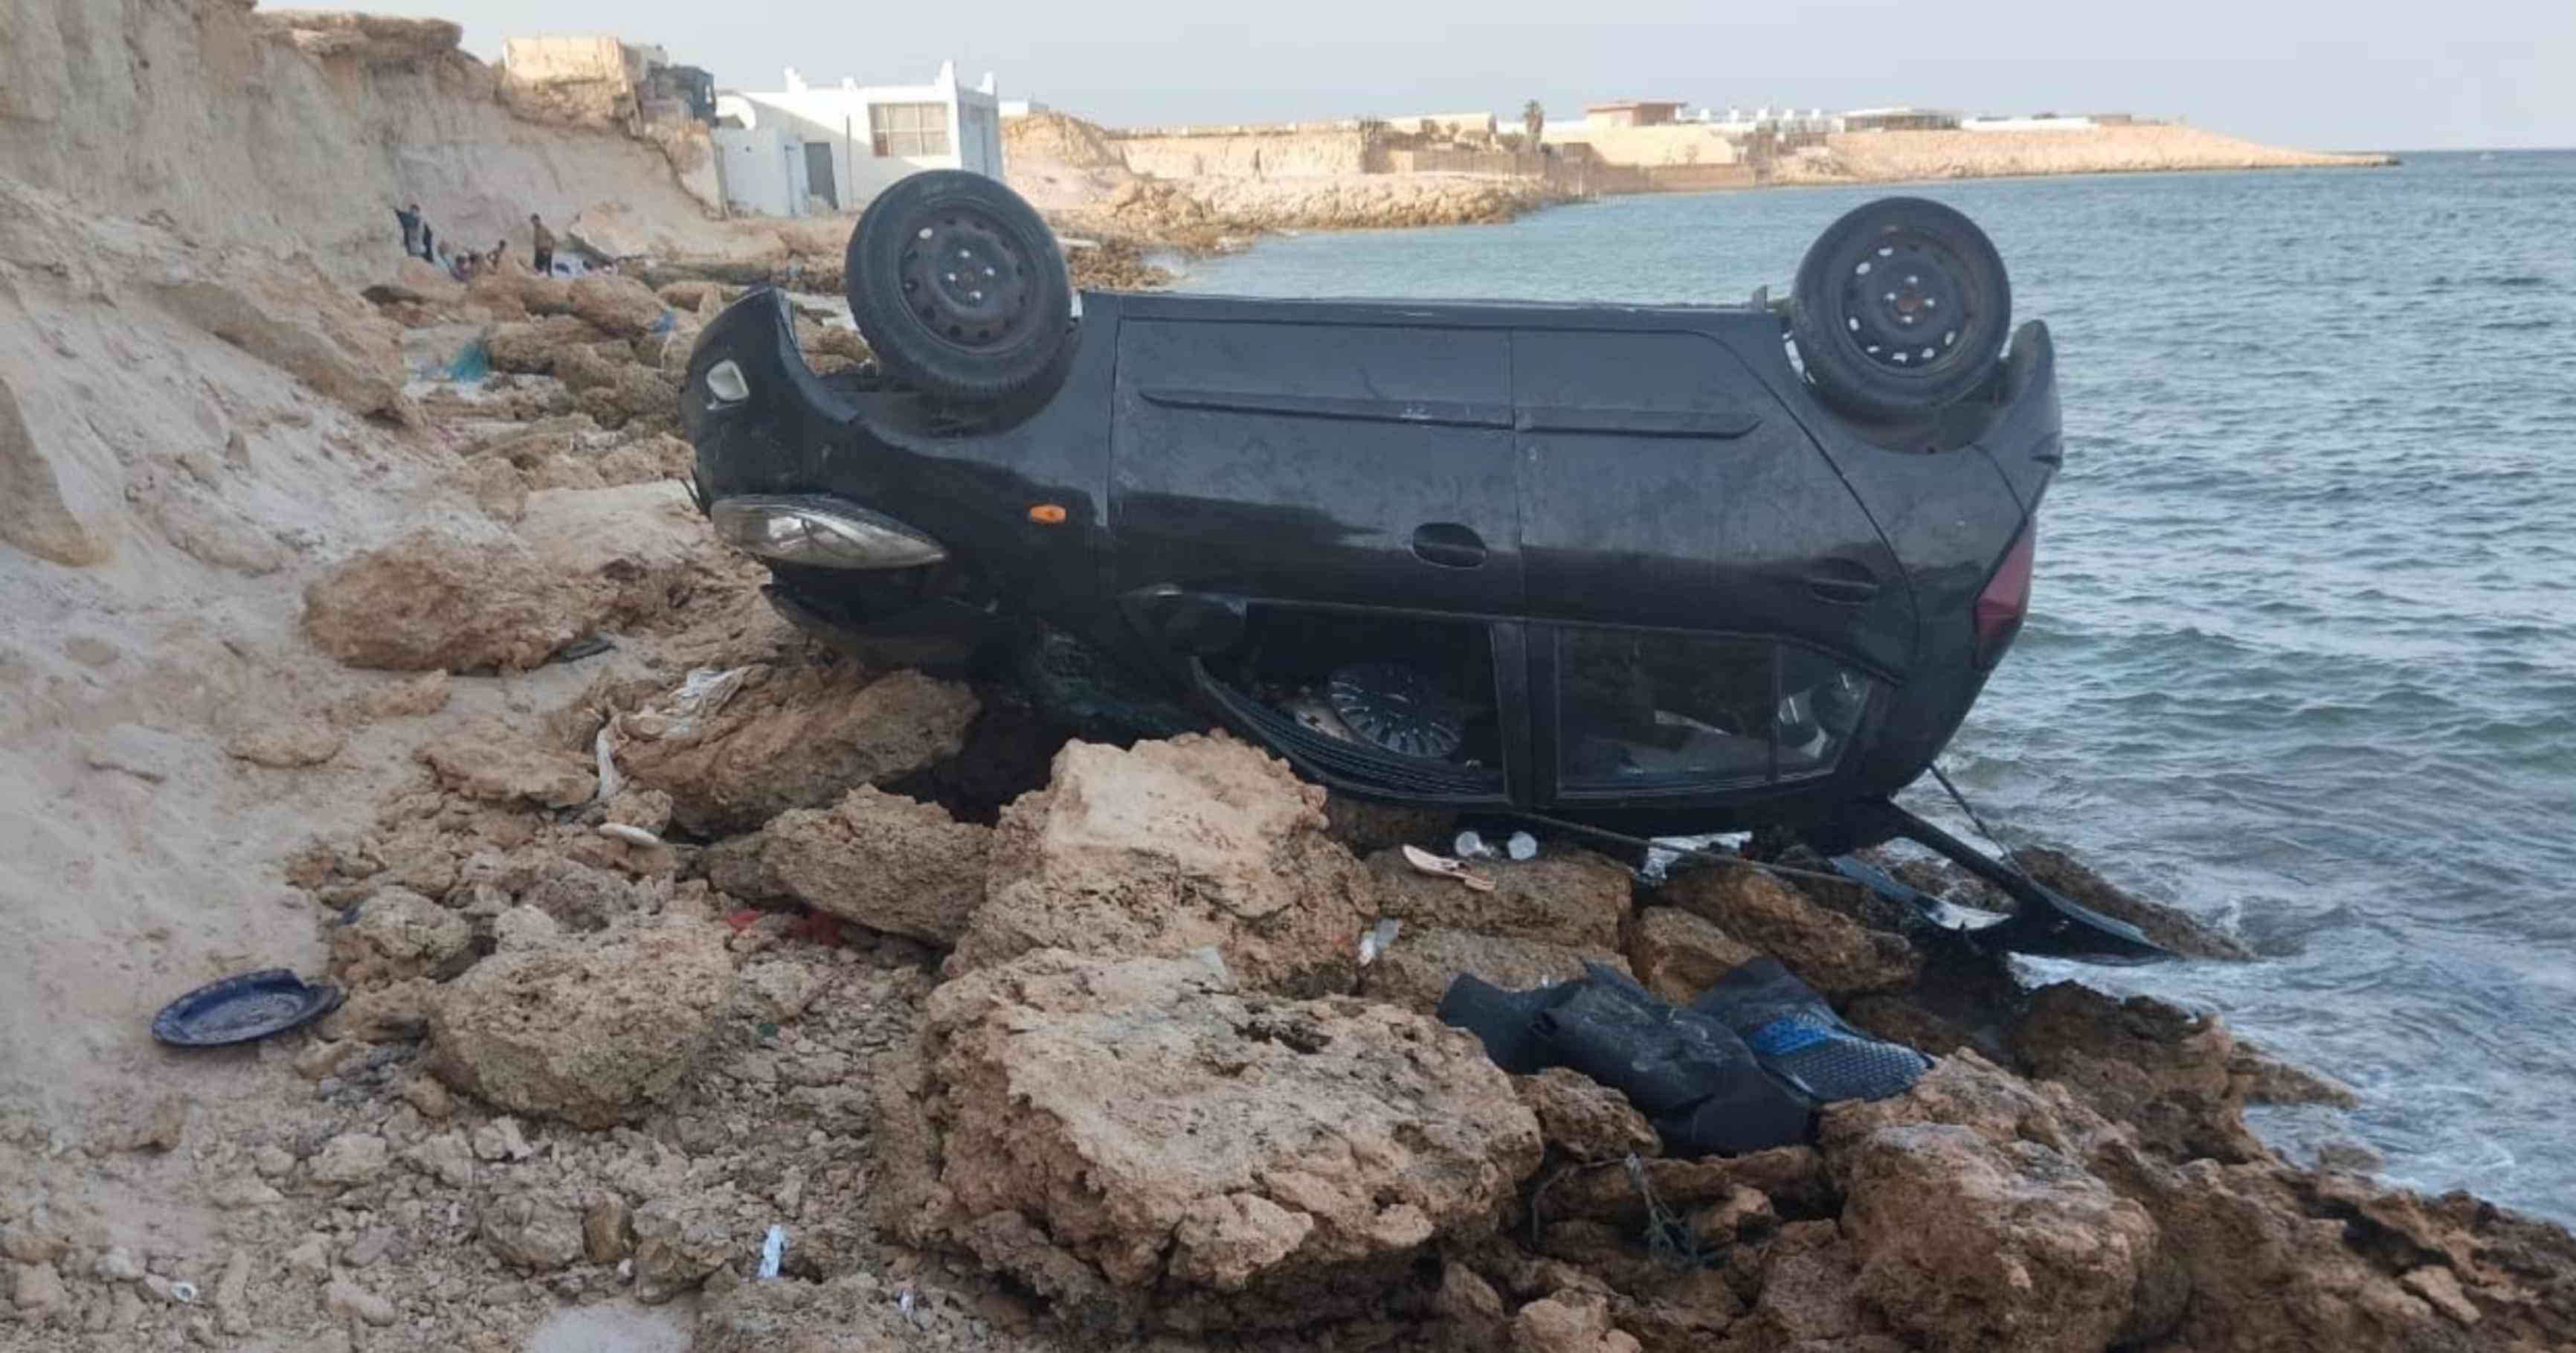 اصابة شخصين متفاوتة الخطورة في حادث سقوط سيارة بسبب انهيار صخري على خليج الداخلة